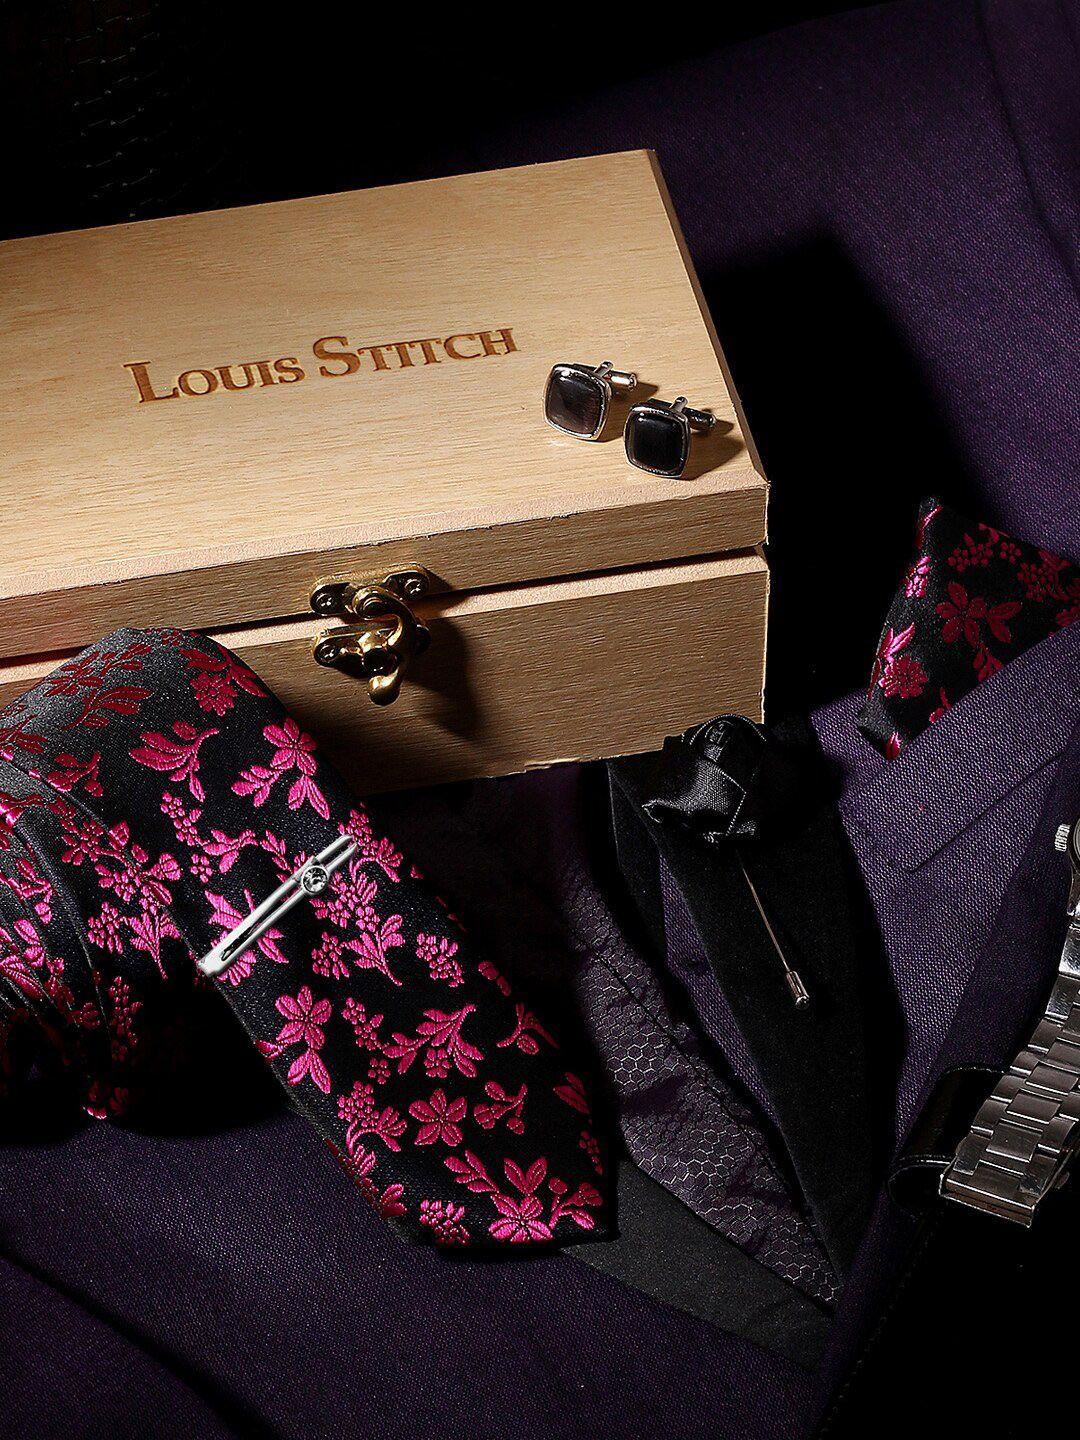 louis stitch men black & pink accessories gift set